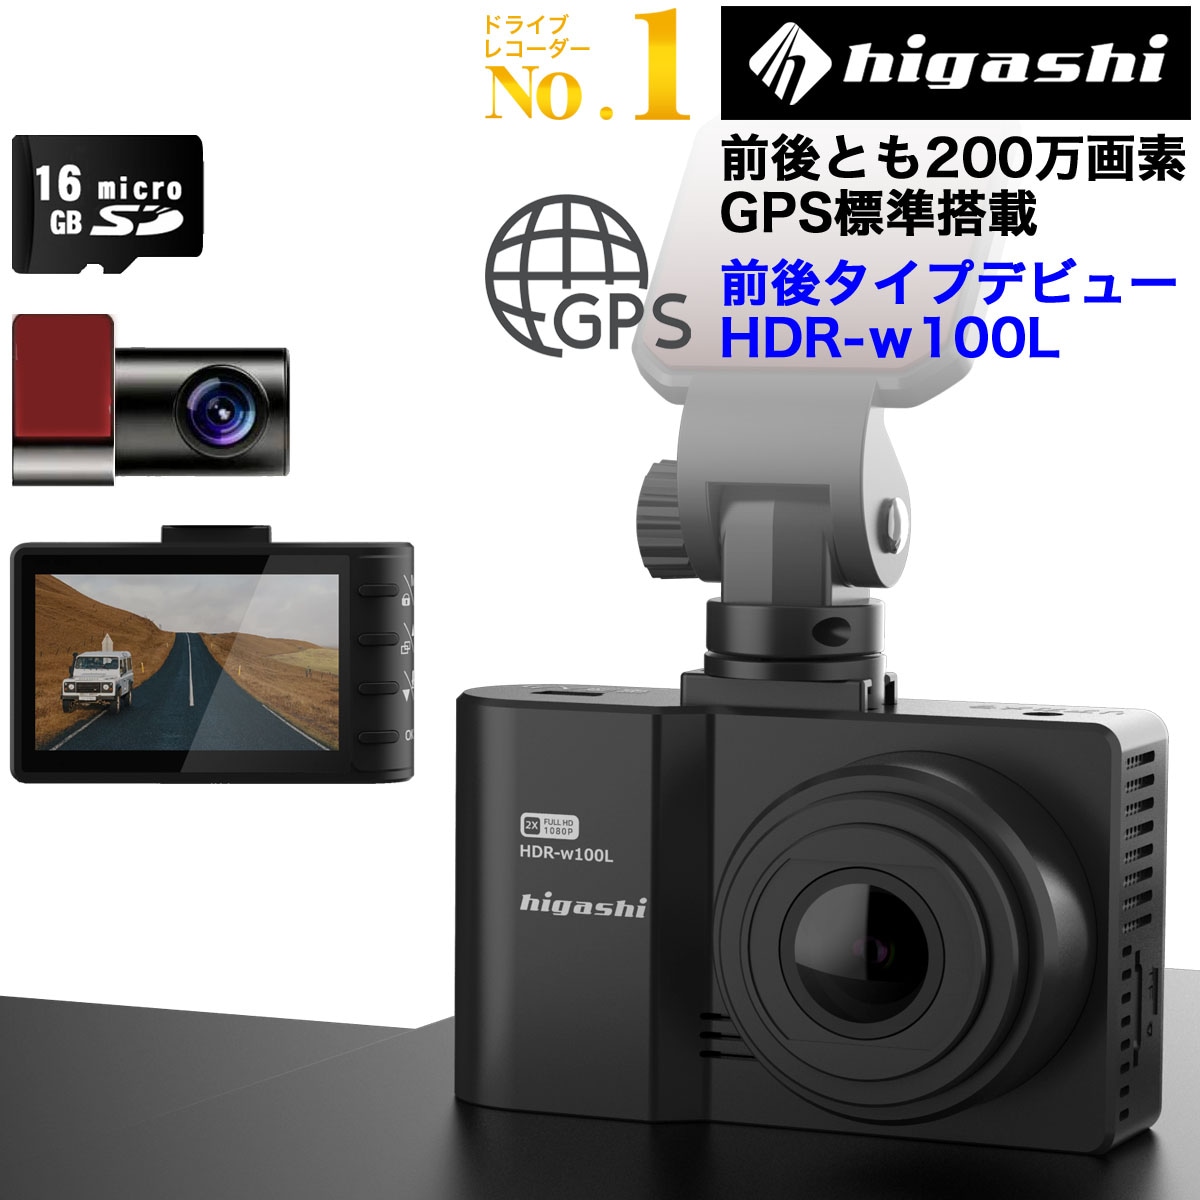 HIGASHI【ドラレコデビューに】 ドライブレコーダー 前後2カメラ 前後 200万画素 型番HDR-w100L